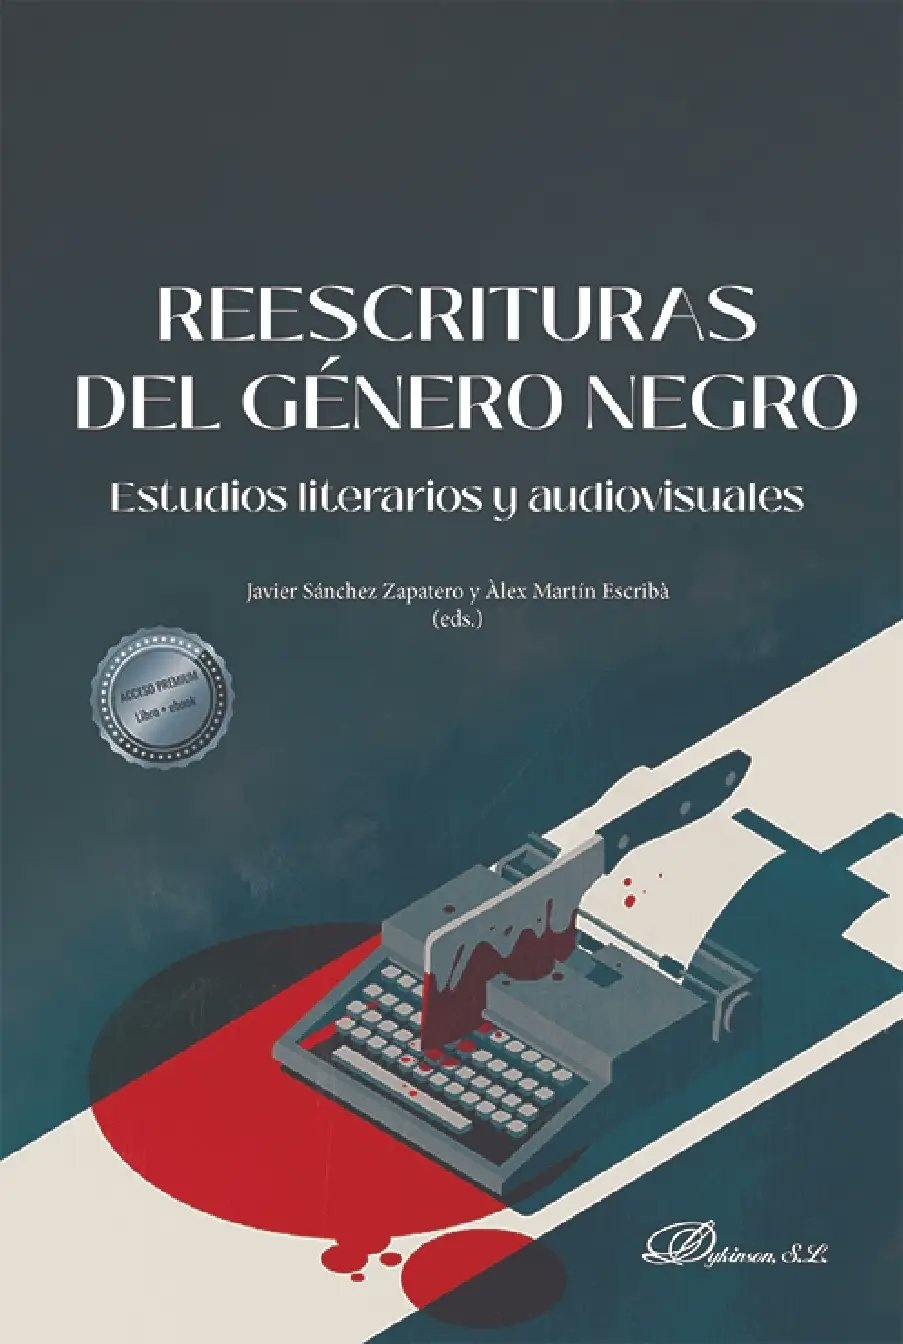 Reescrituras del género negro "Estudios literarios y audiovisuales". 